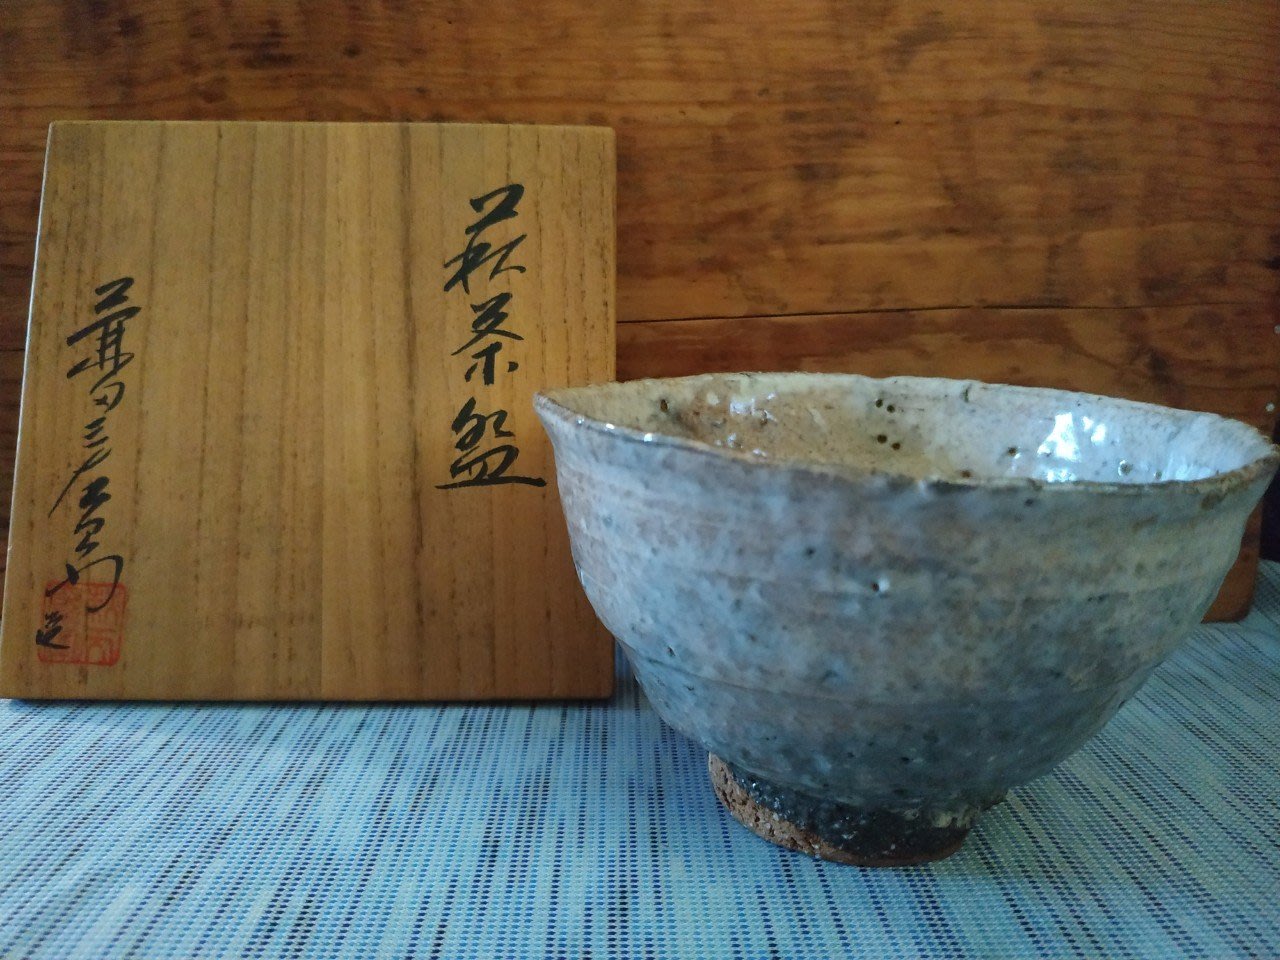 日本名家天寵山窯7代目兼田三左衛門製有落款萩燒茶碗(免運費